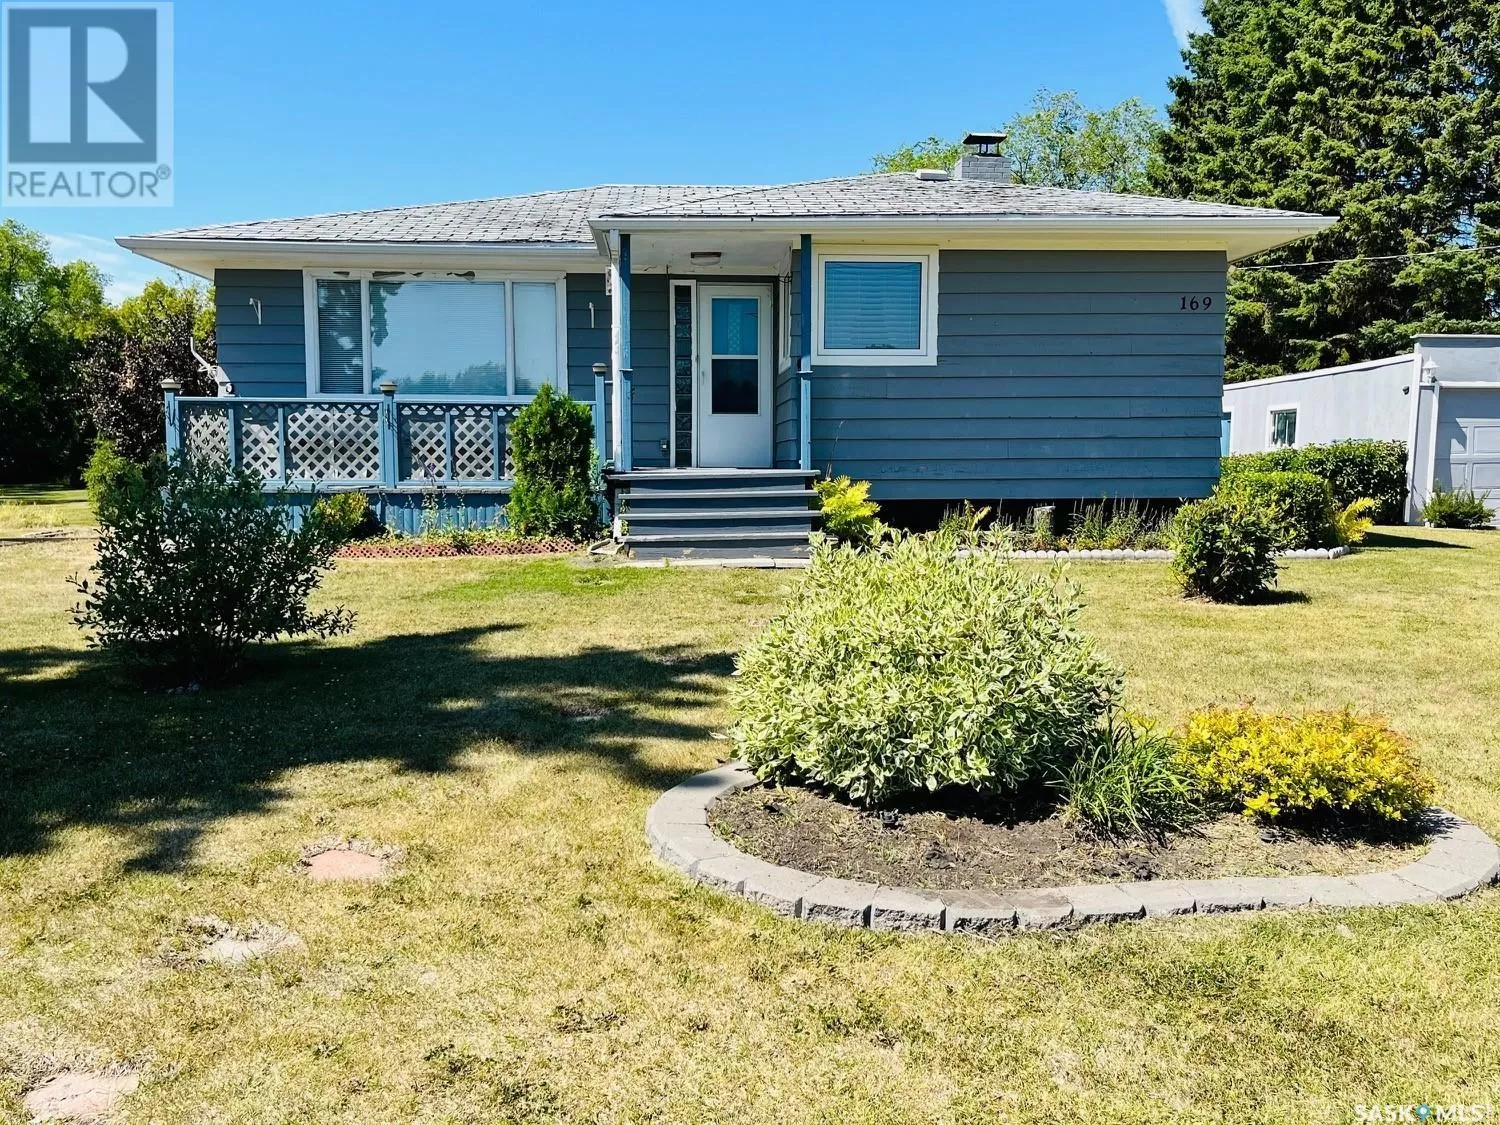 House for rent: 169 Road Allowance, Calder, Saskatchewan S0A 0K0